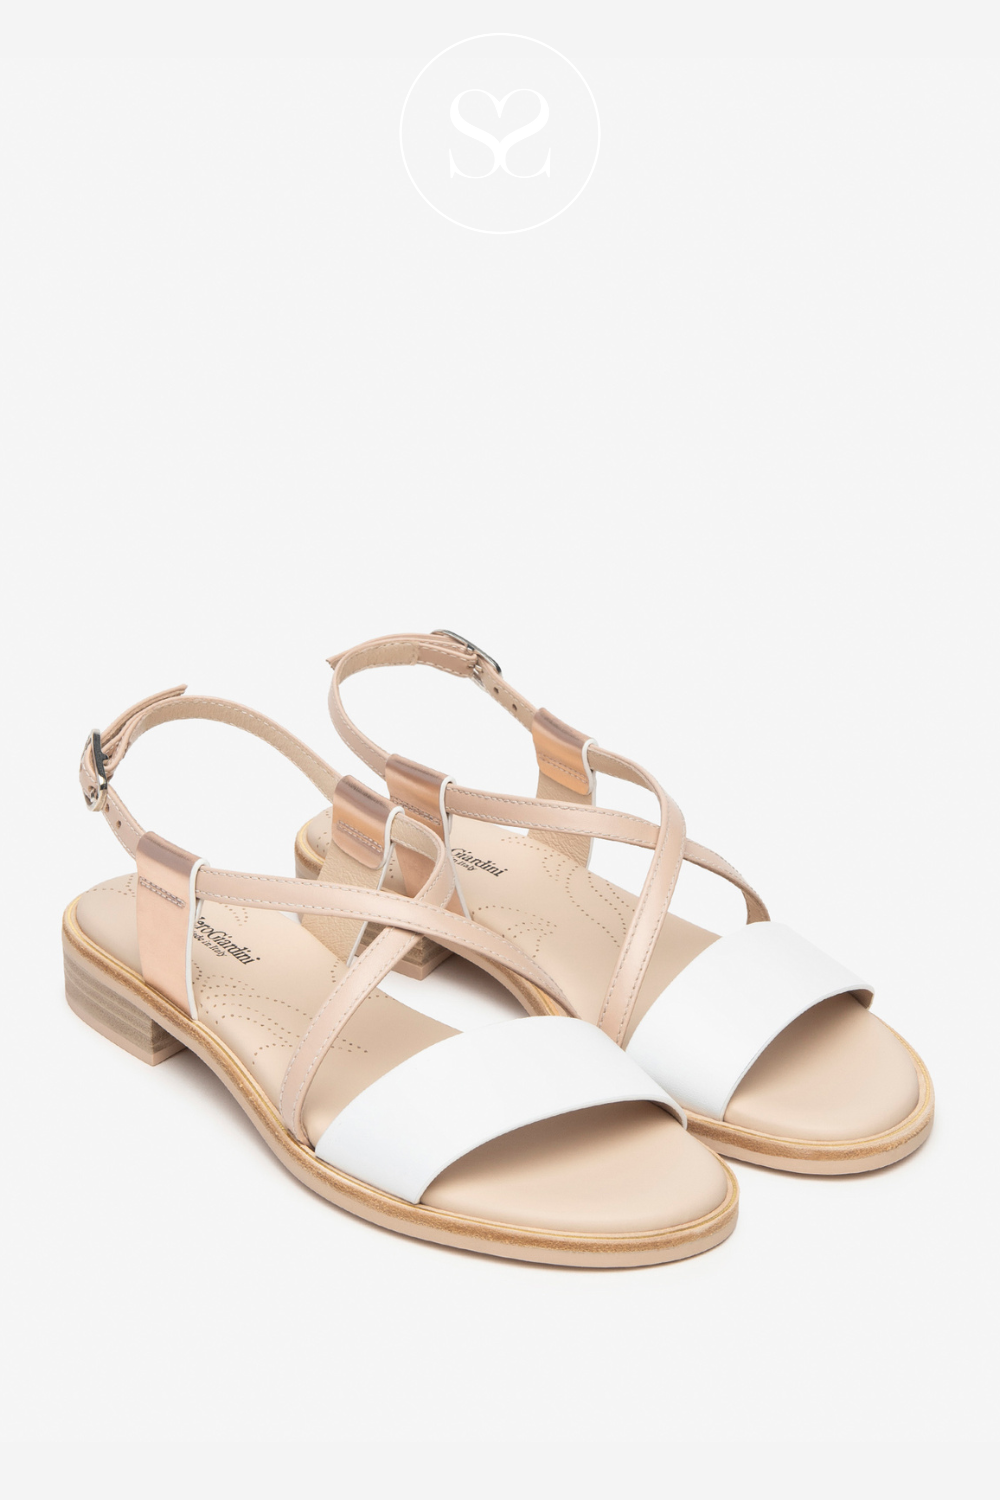 Nero Giardini metallic and white flat strappy sandals for Women